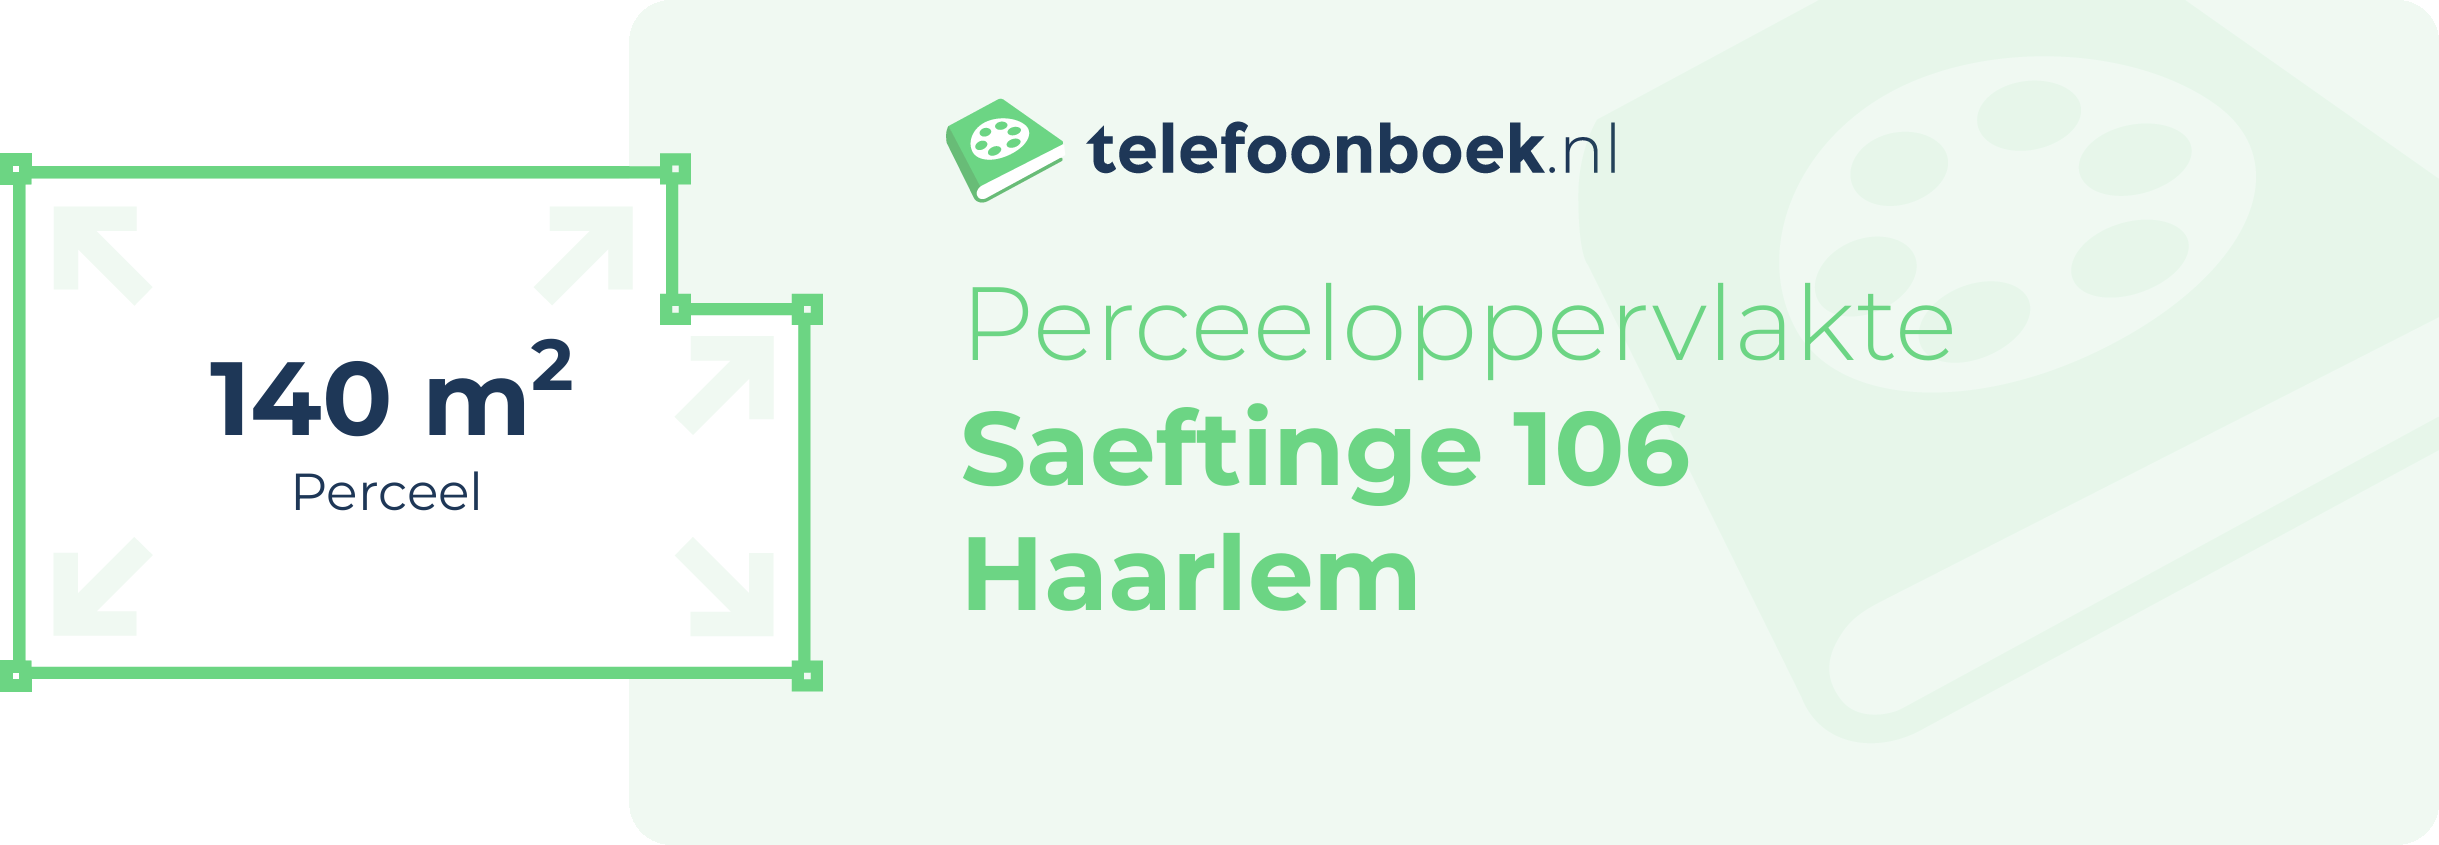 Perceeloppervlakte Saeftinge 106 Haarlem